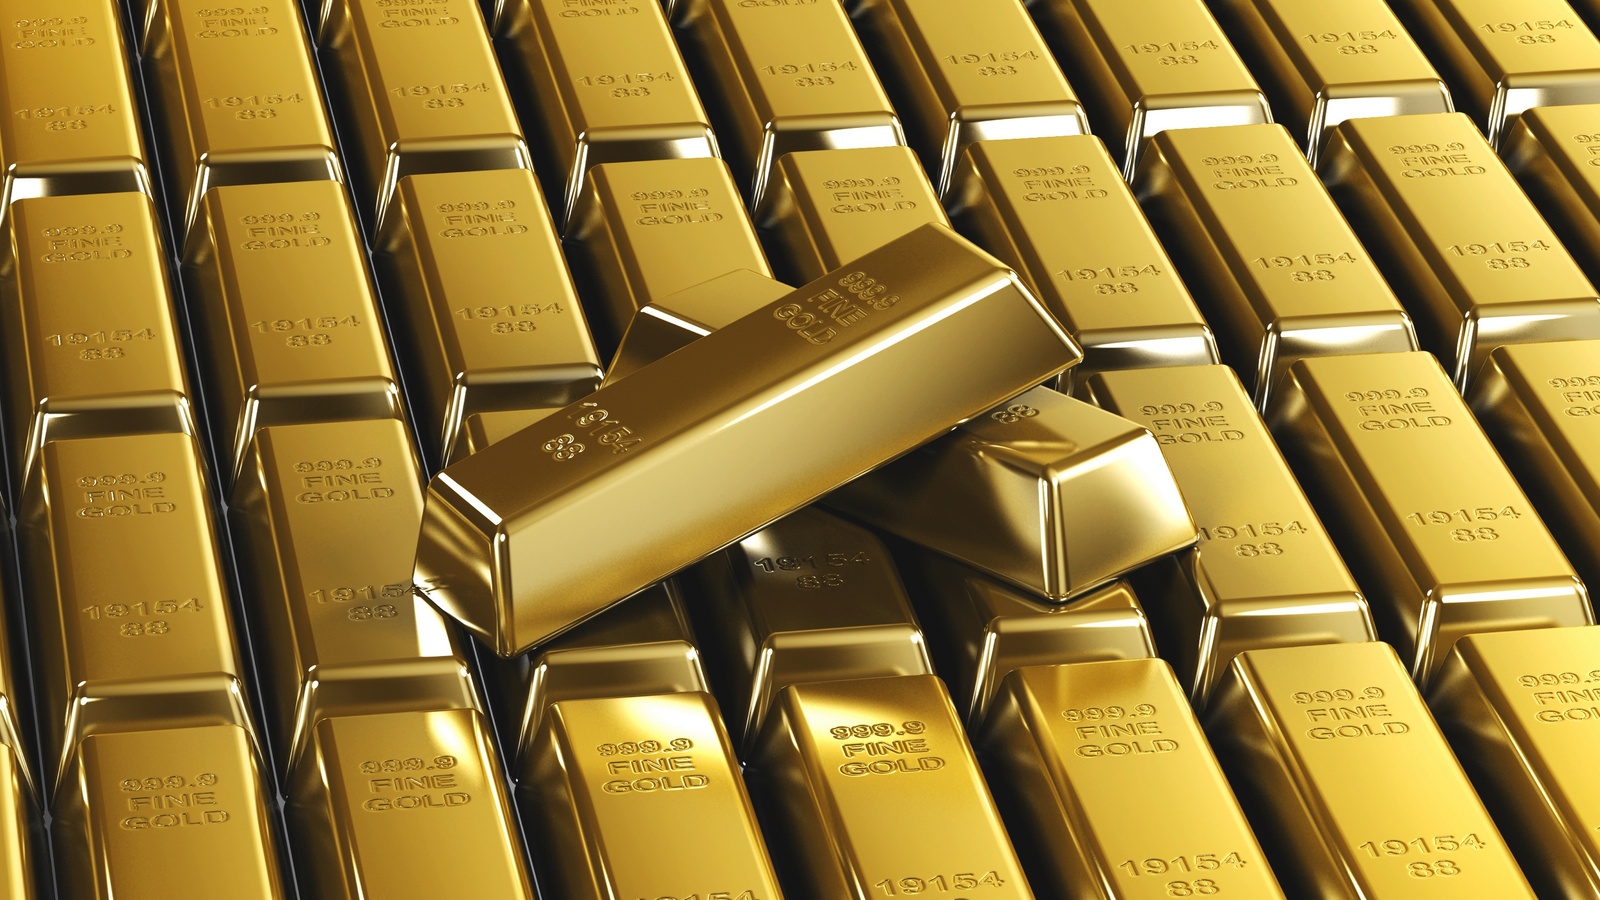 Цена на золото стремительно растет, возможен всплеск инфляции в США  - фото 1